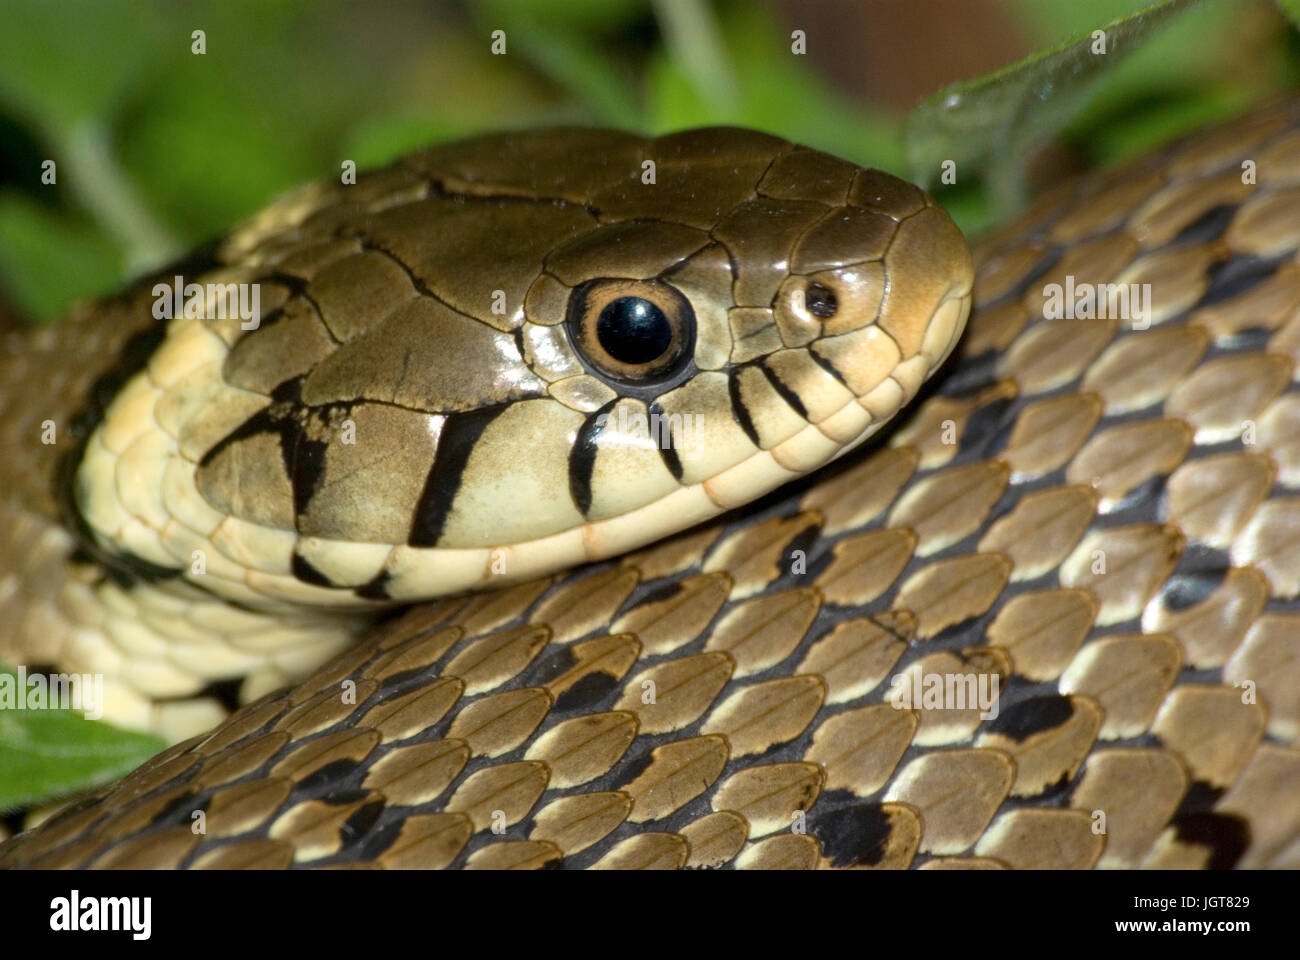 European grass snake Stock Photo